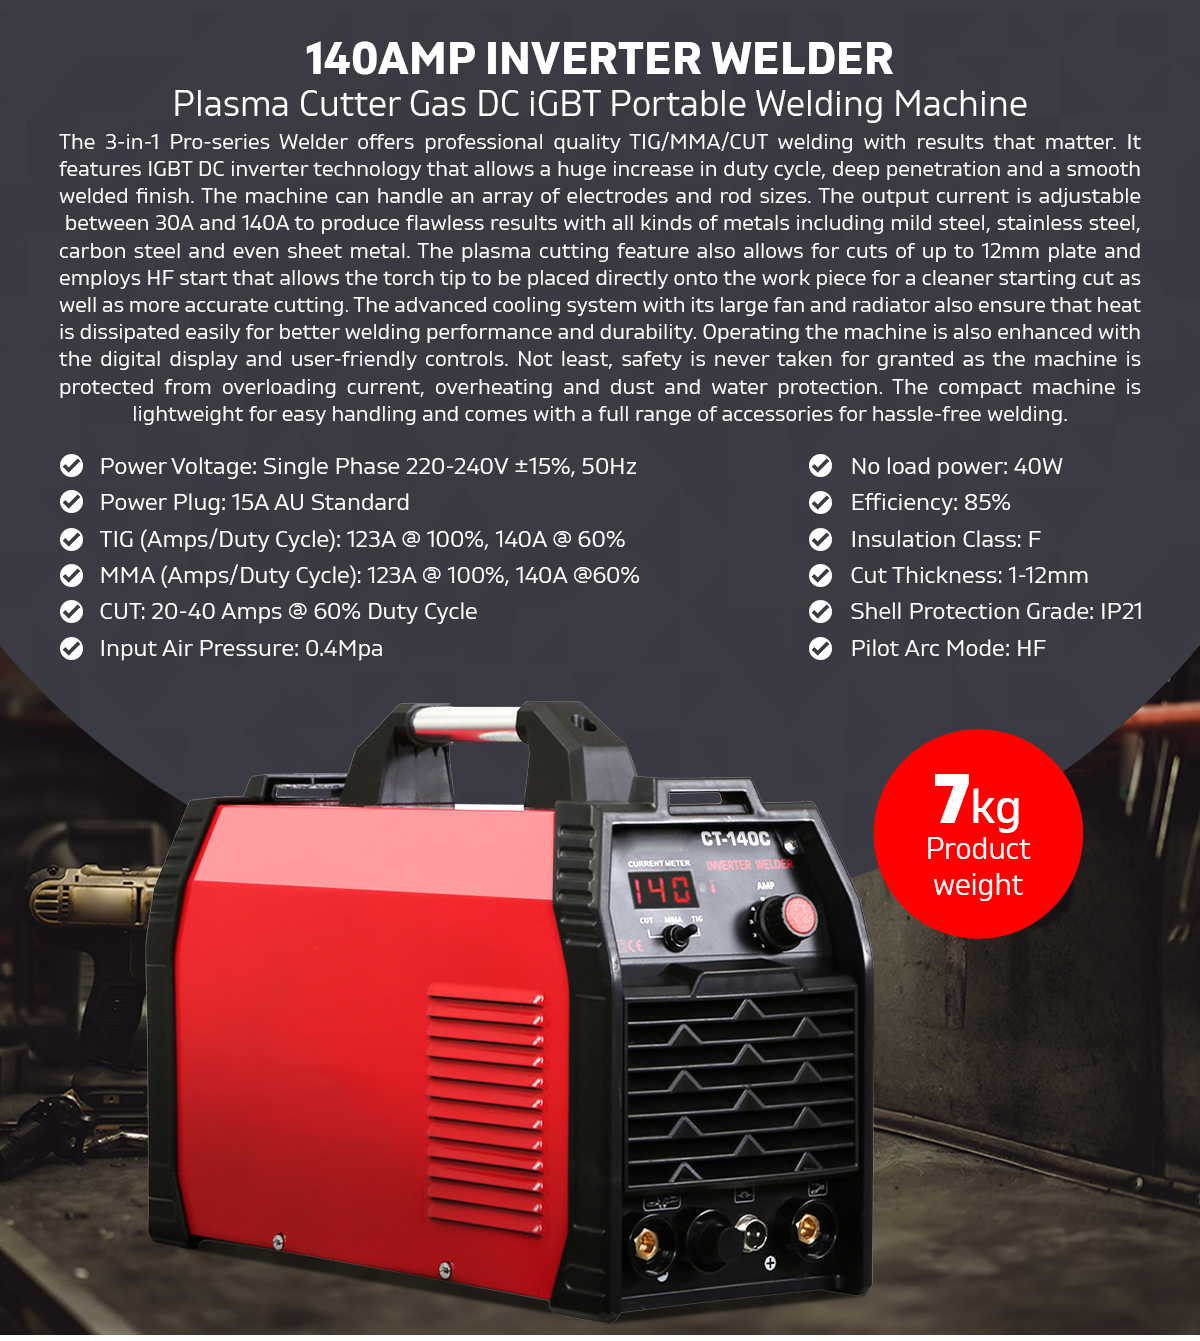 Inverter 140Amp Welder Plasma Cutter Gas DC iGBT Portable Welding Machine